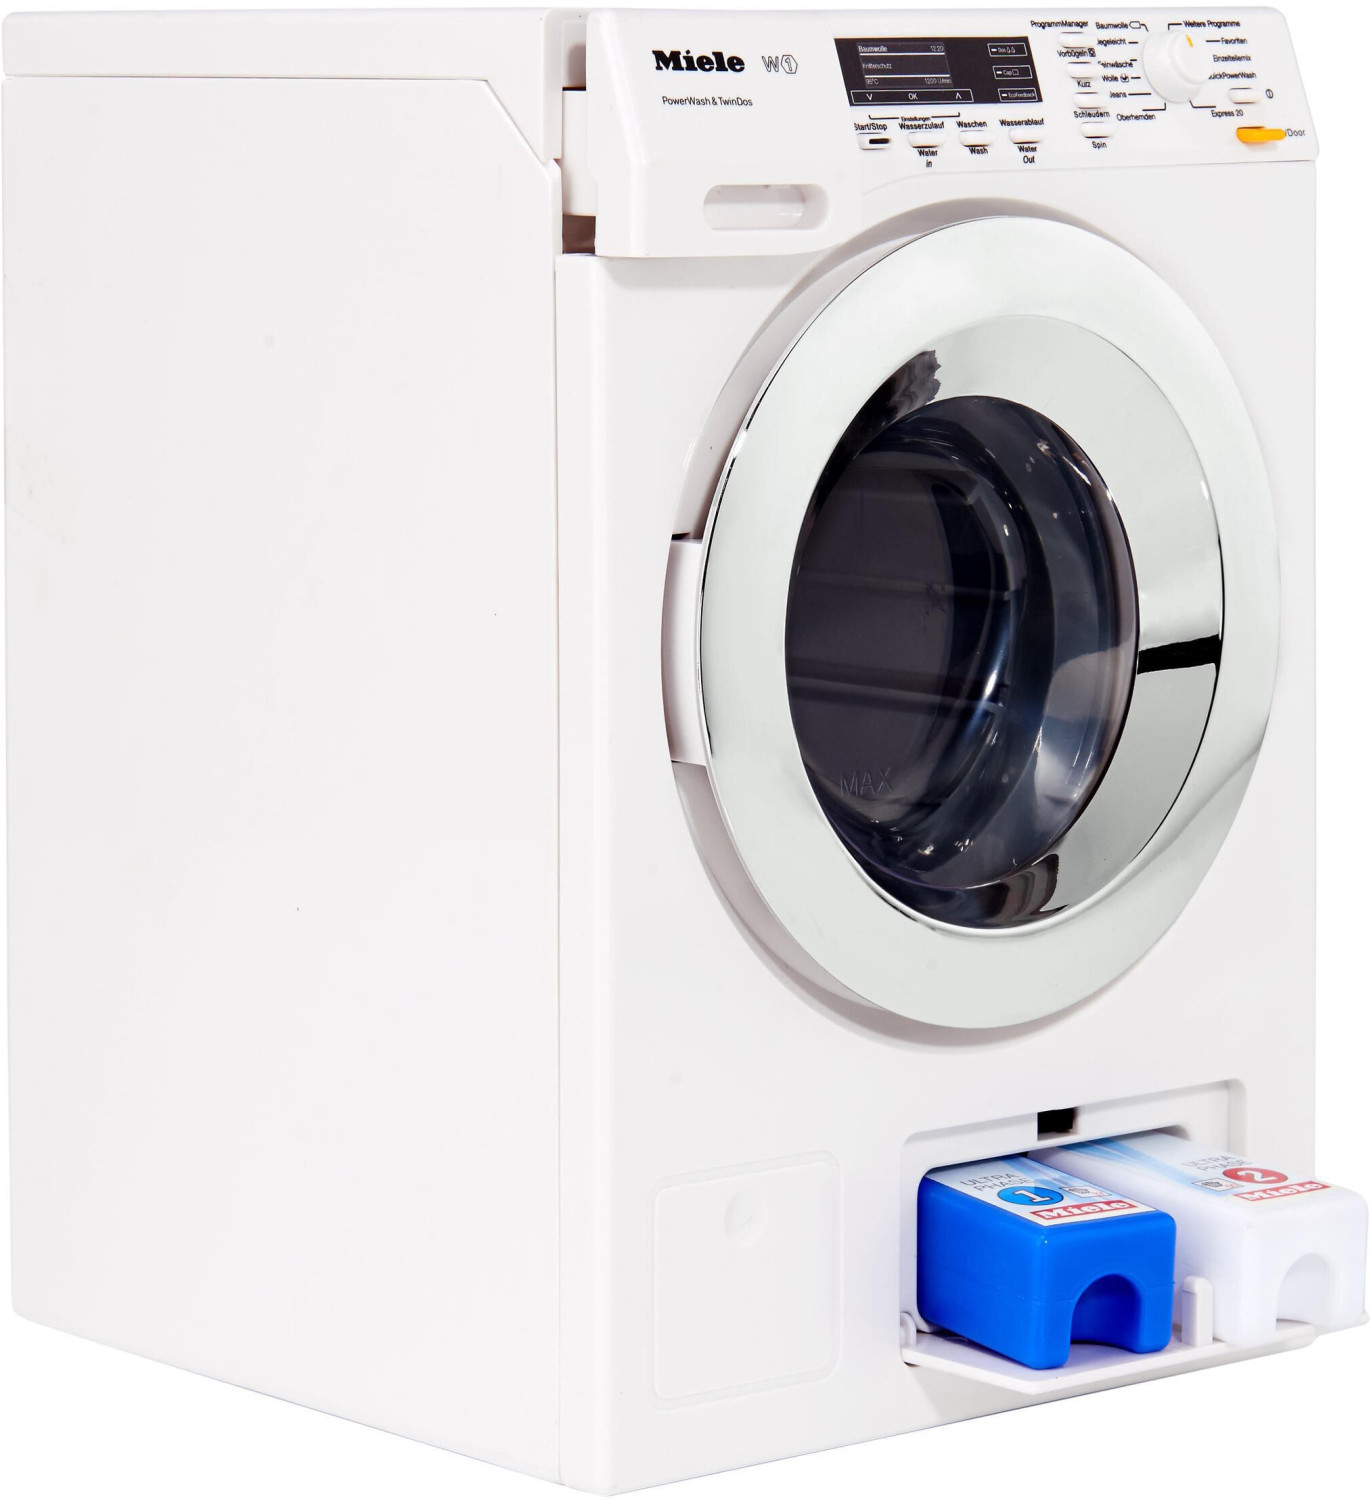 klein toys Preisvergleich | € Spielzeug 2024 (6941) (Februar bei 36,39 Preise) Miele Waschmaschine ab